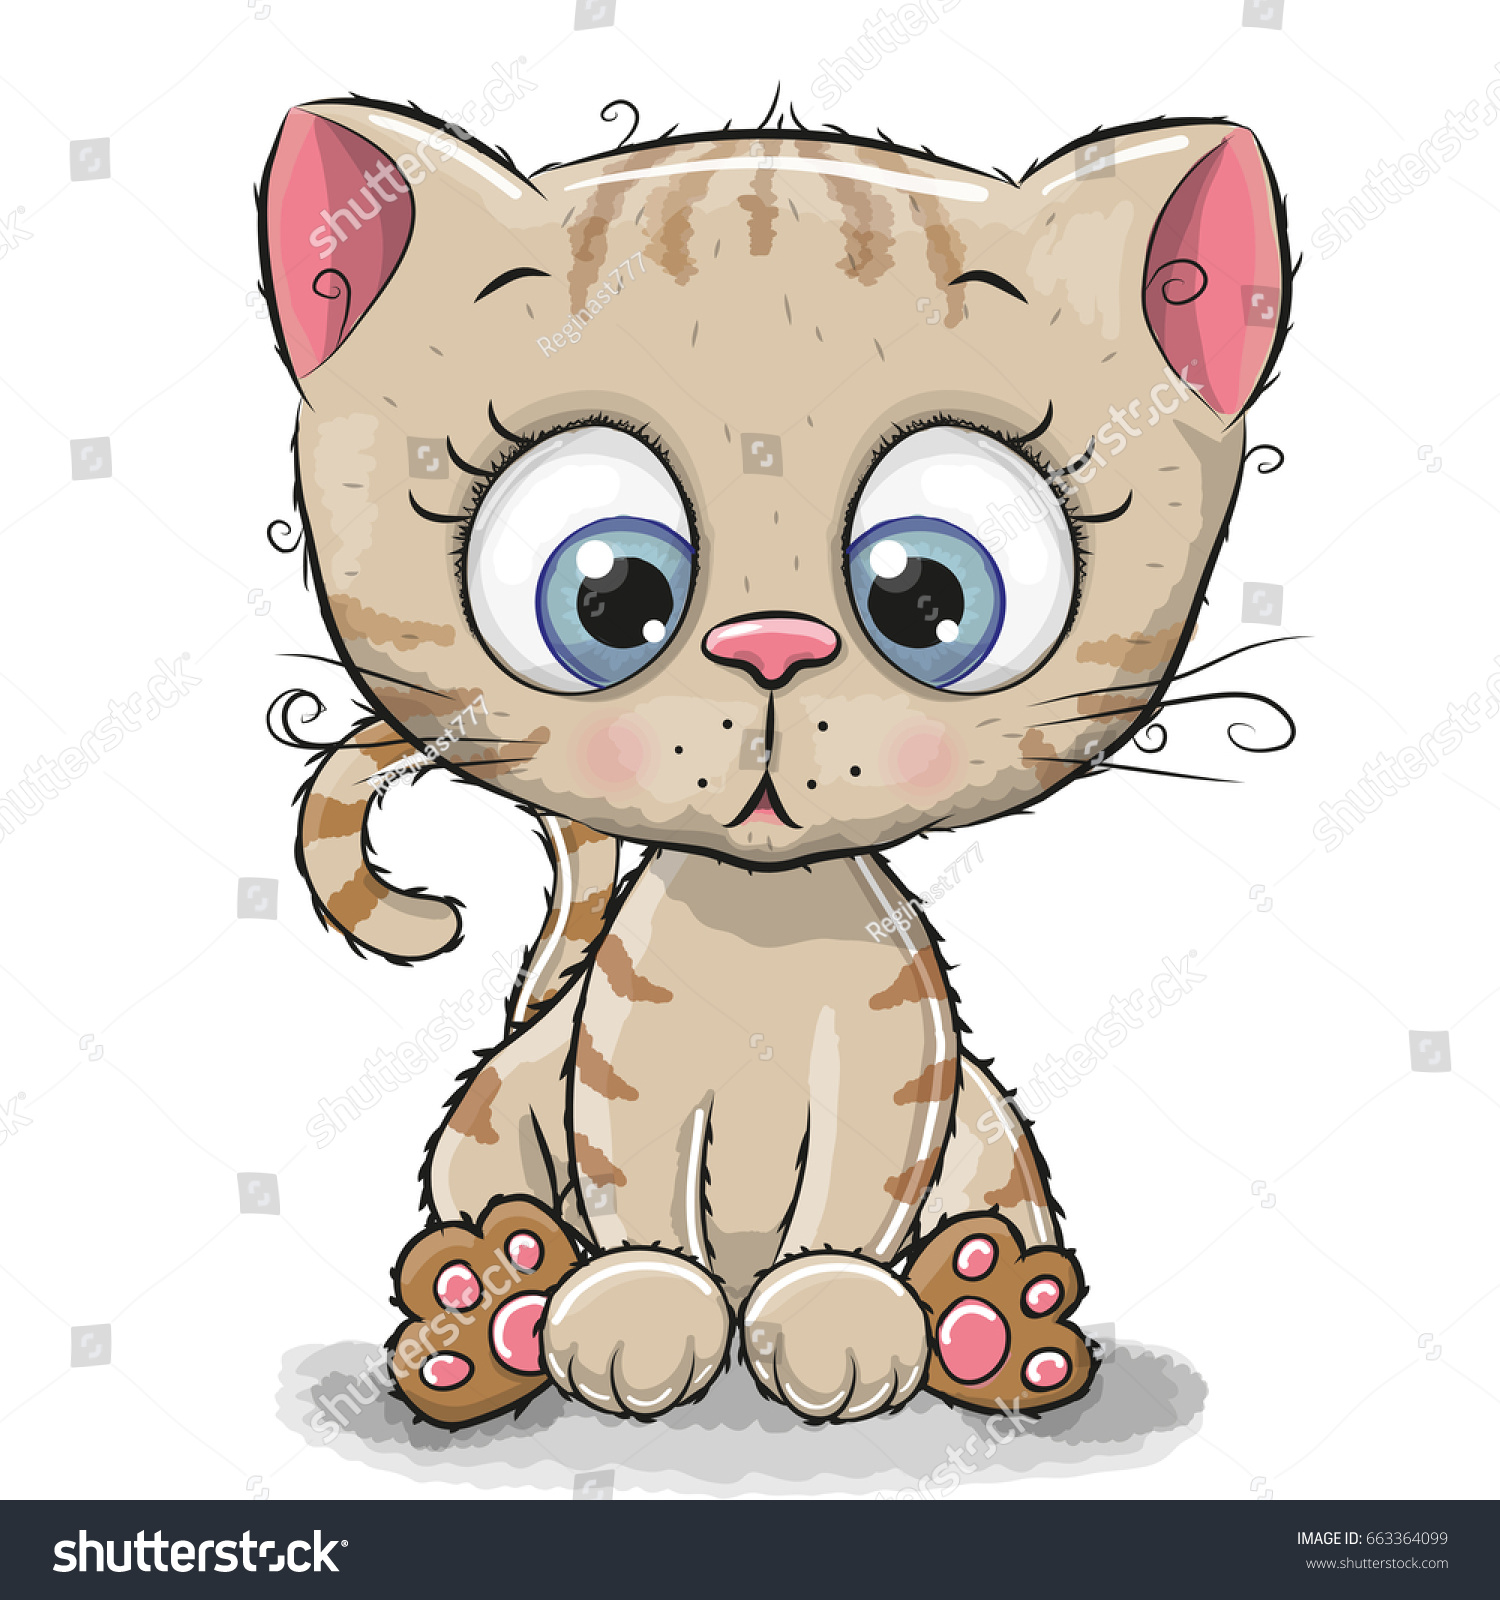 Cute Cartoon Kitten Isolated On White Stock Illustration 663364099